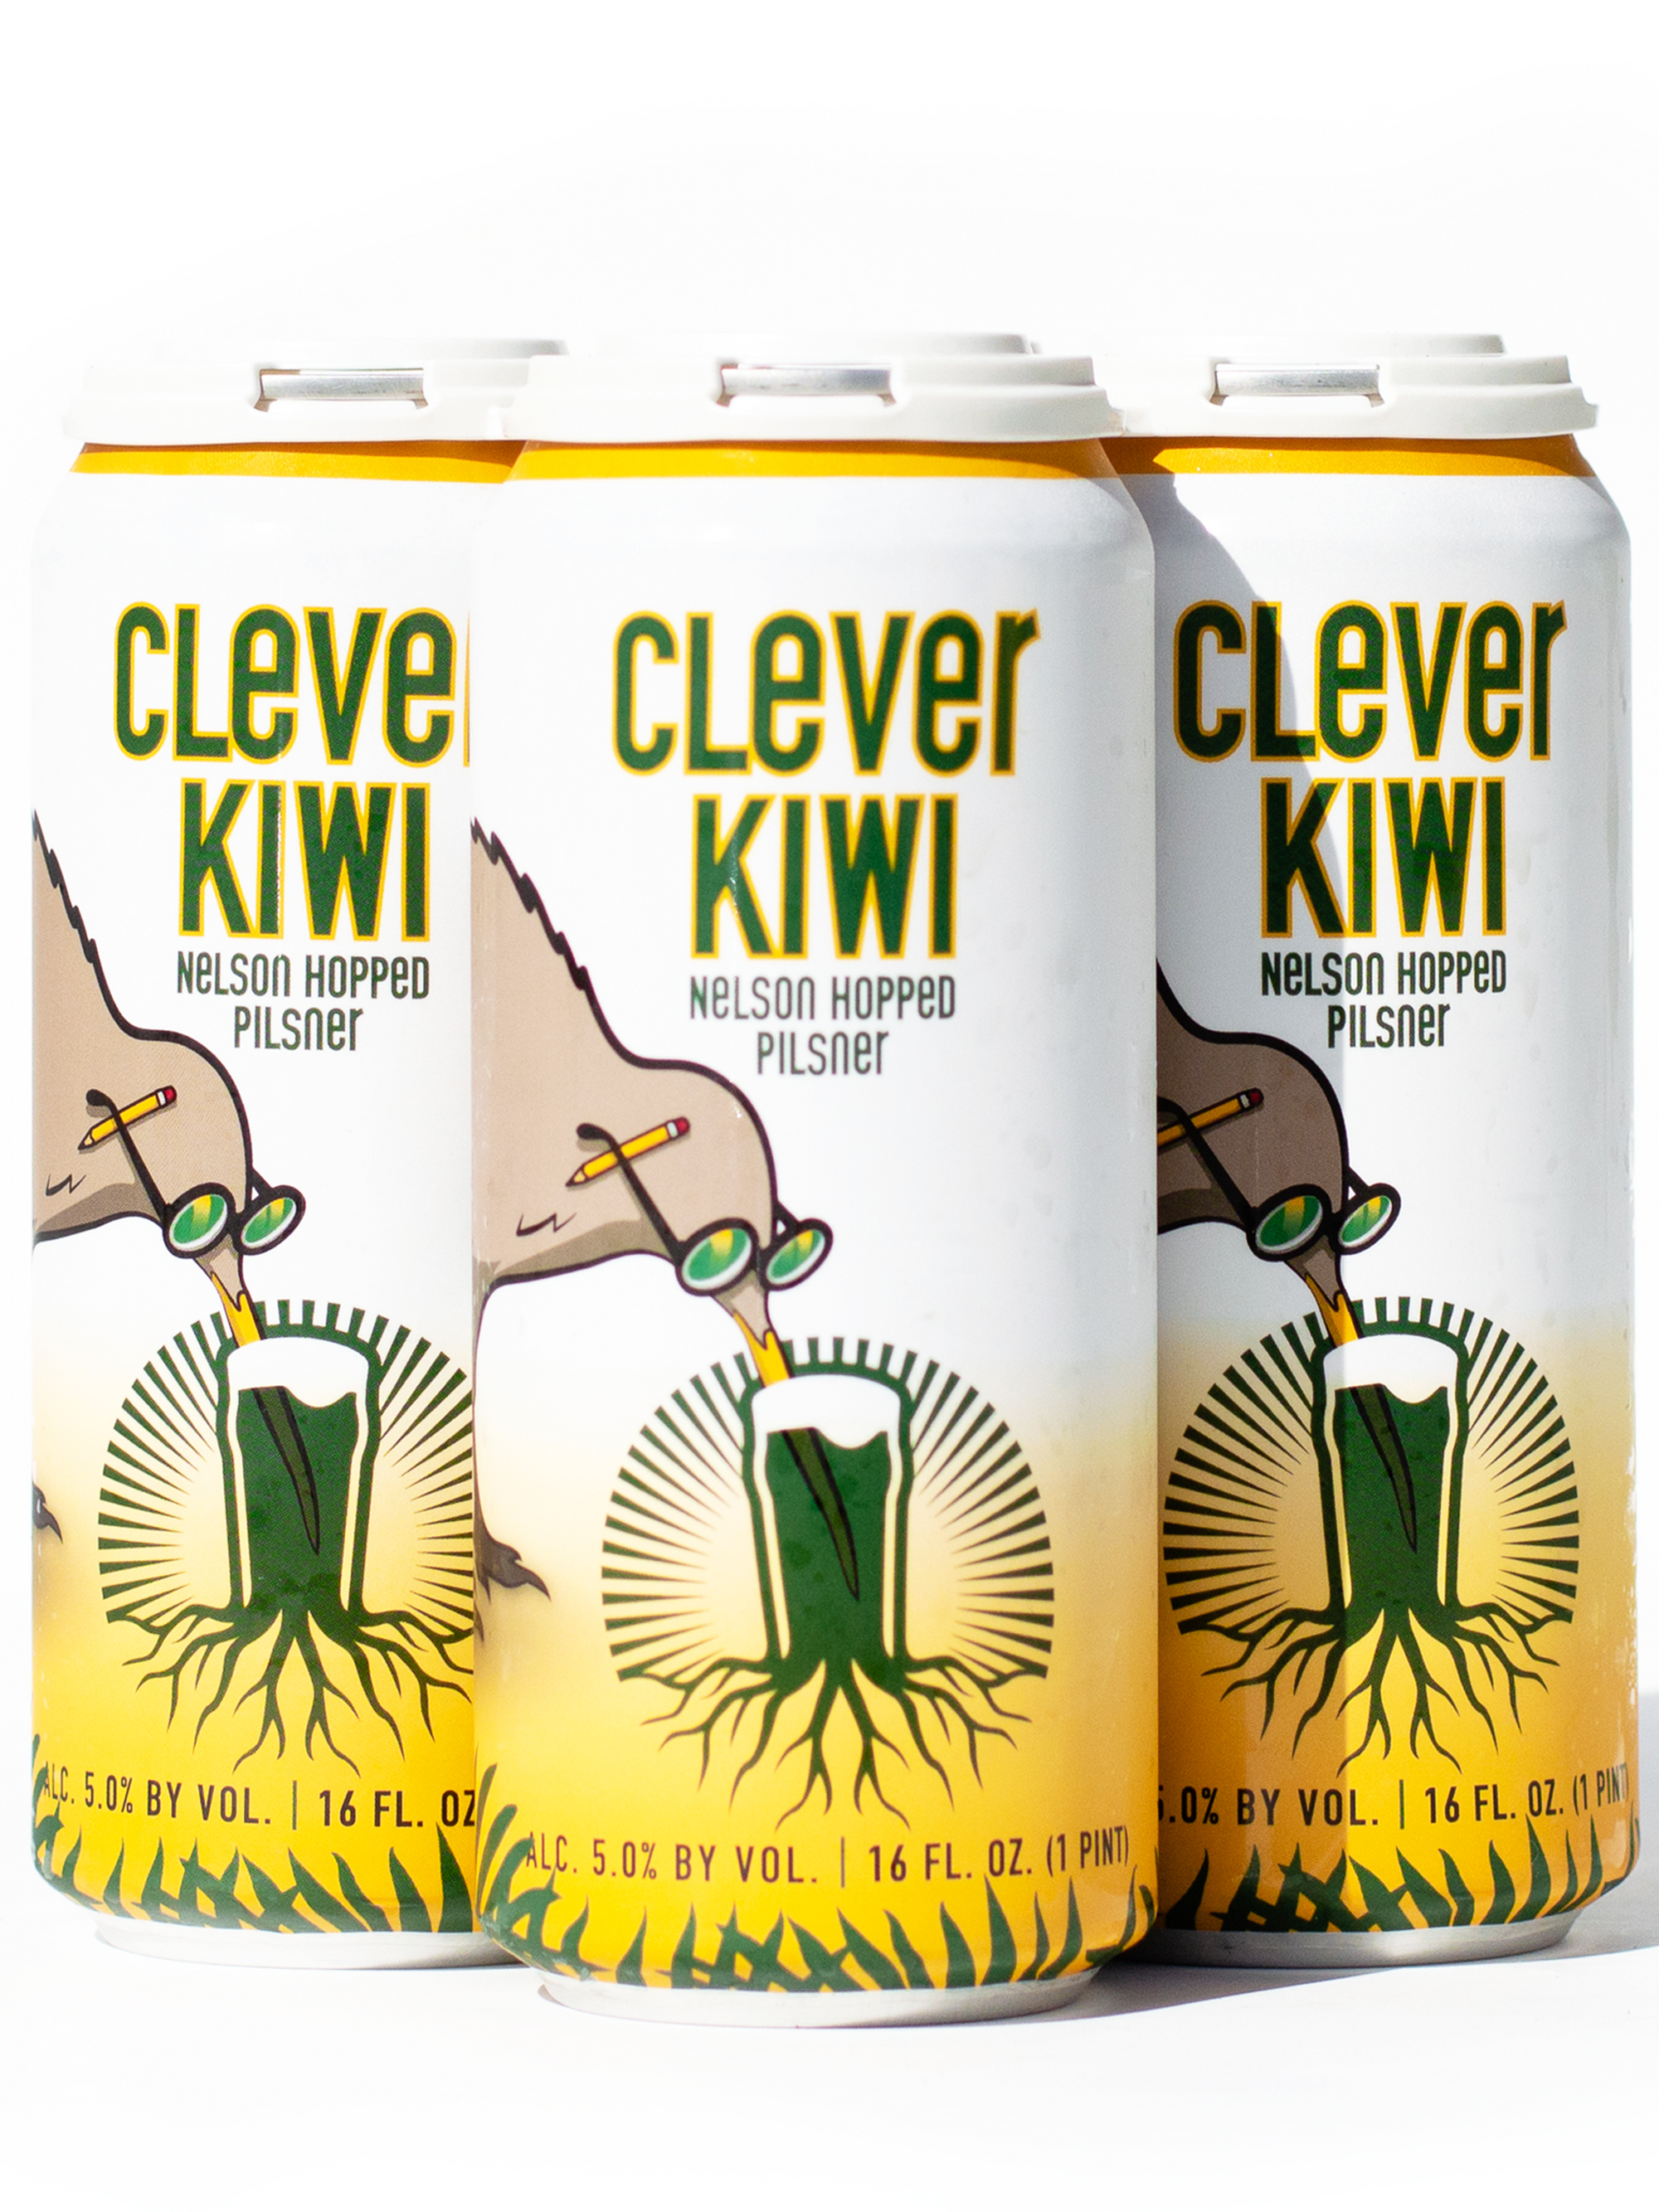 Clever Kiwi Nelson Hopped Pilsner - 4 Pack